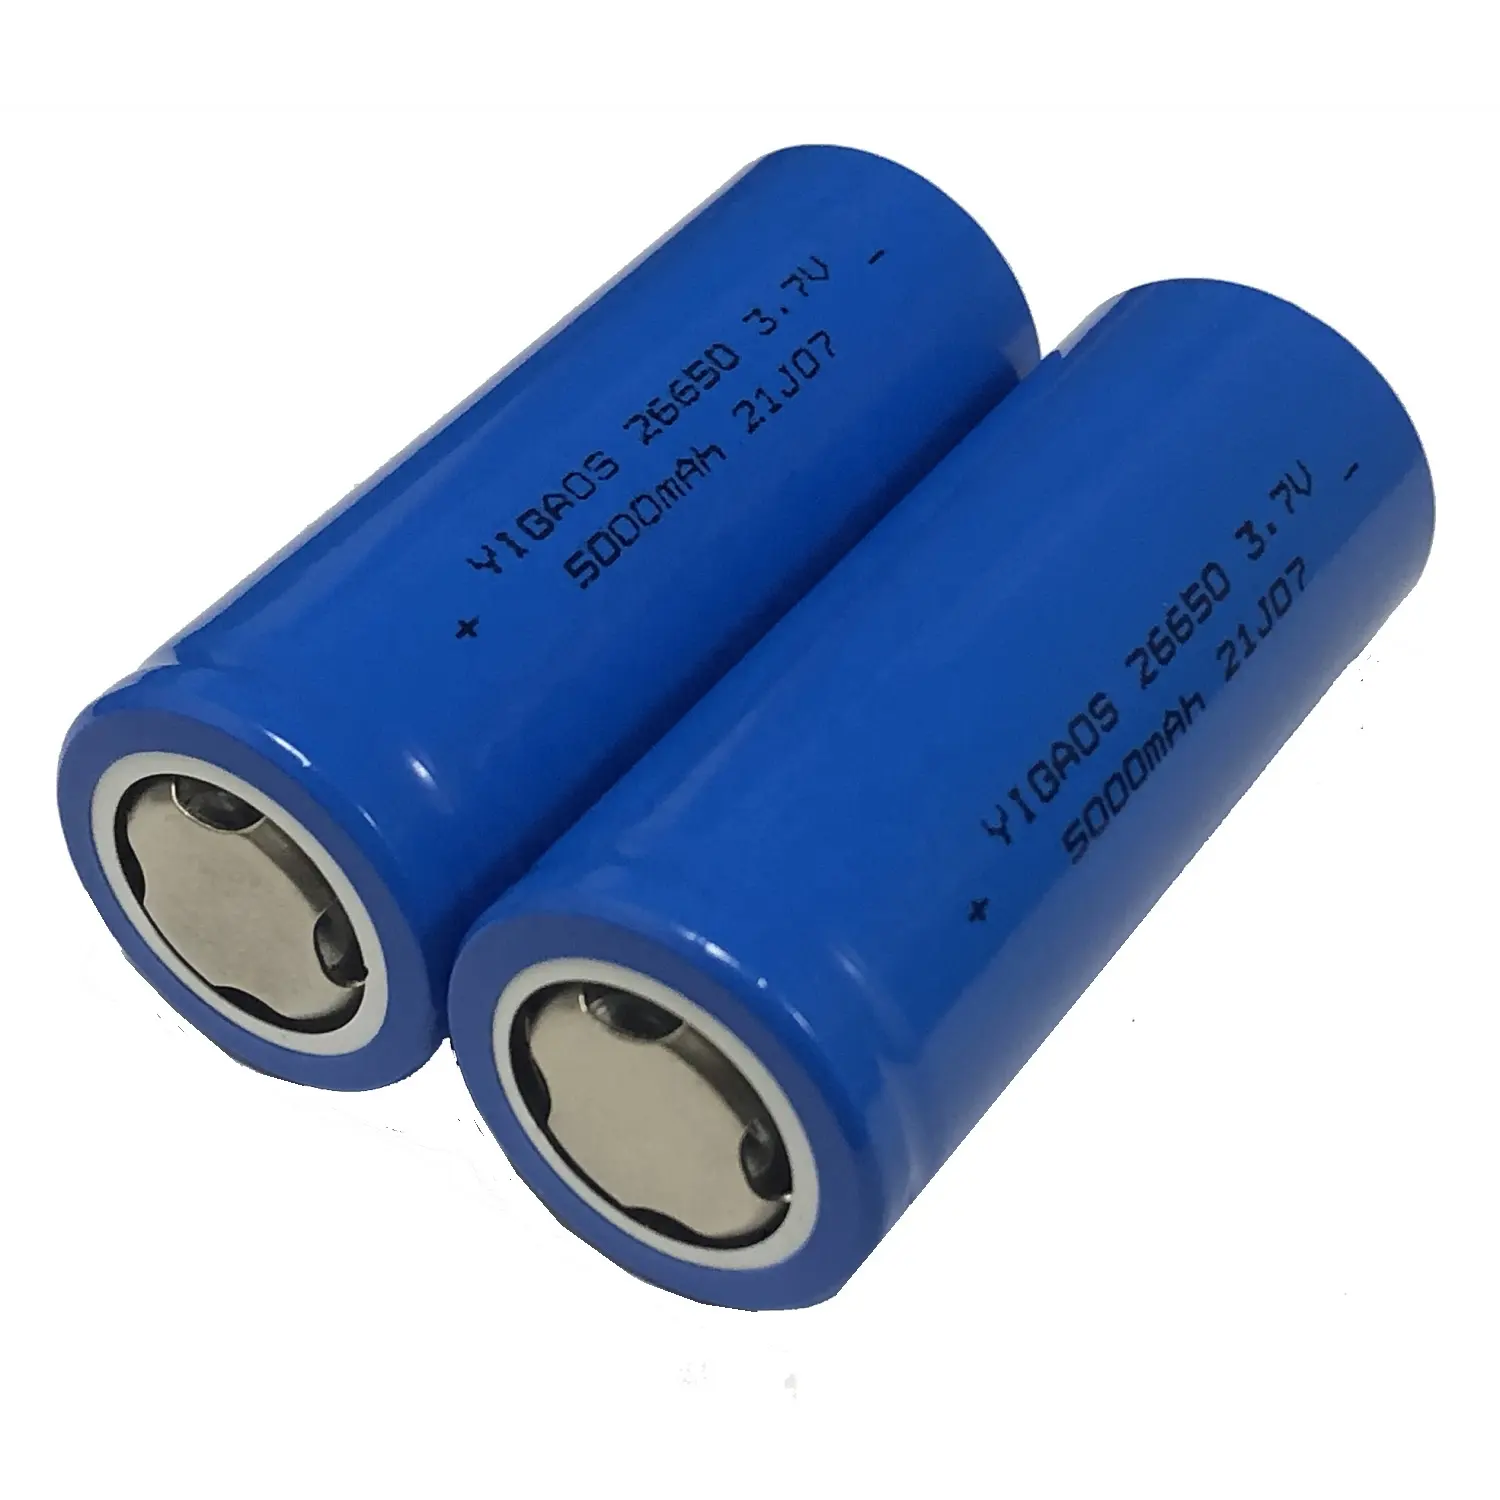 Batterie lithium-ion 14500 18650 21700 26650 32700 batterie 800mAh 3500mAh 5000mAh 6000mAh batteries lithium-ion rechargeables